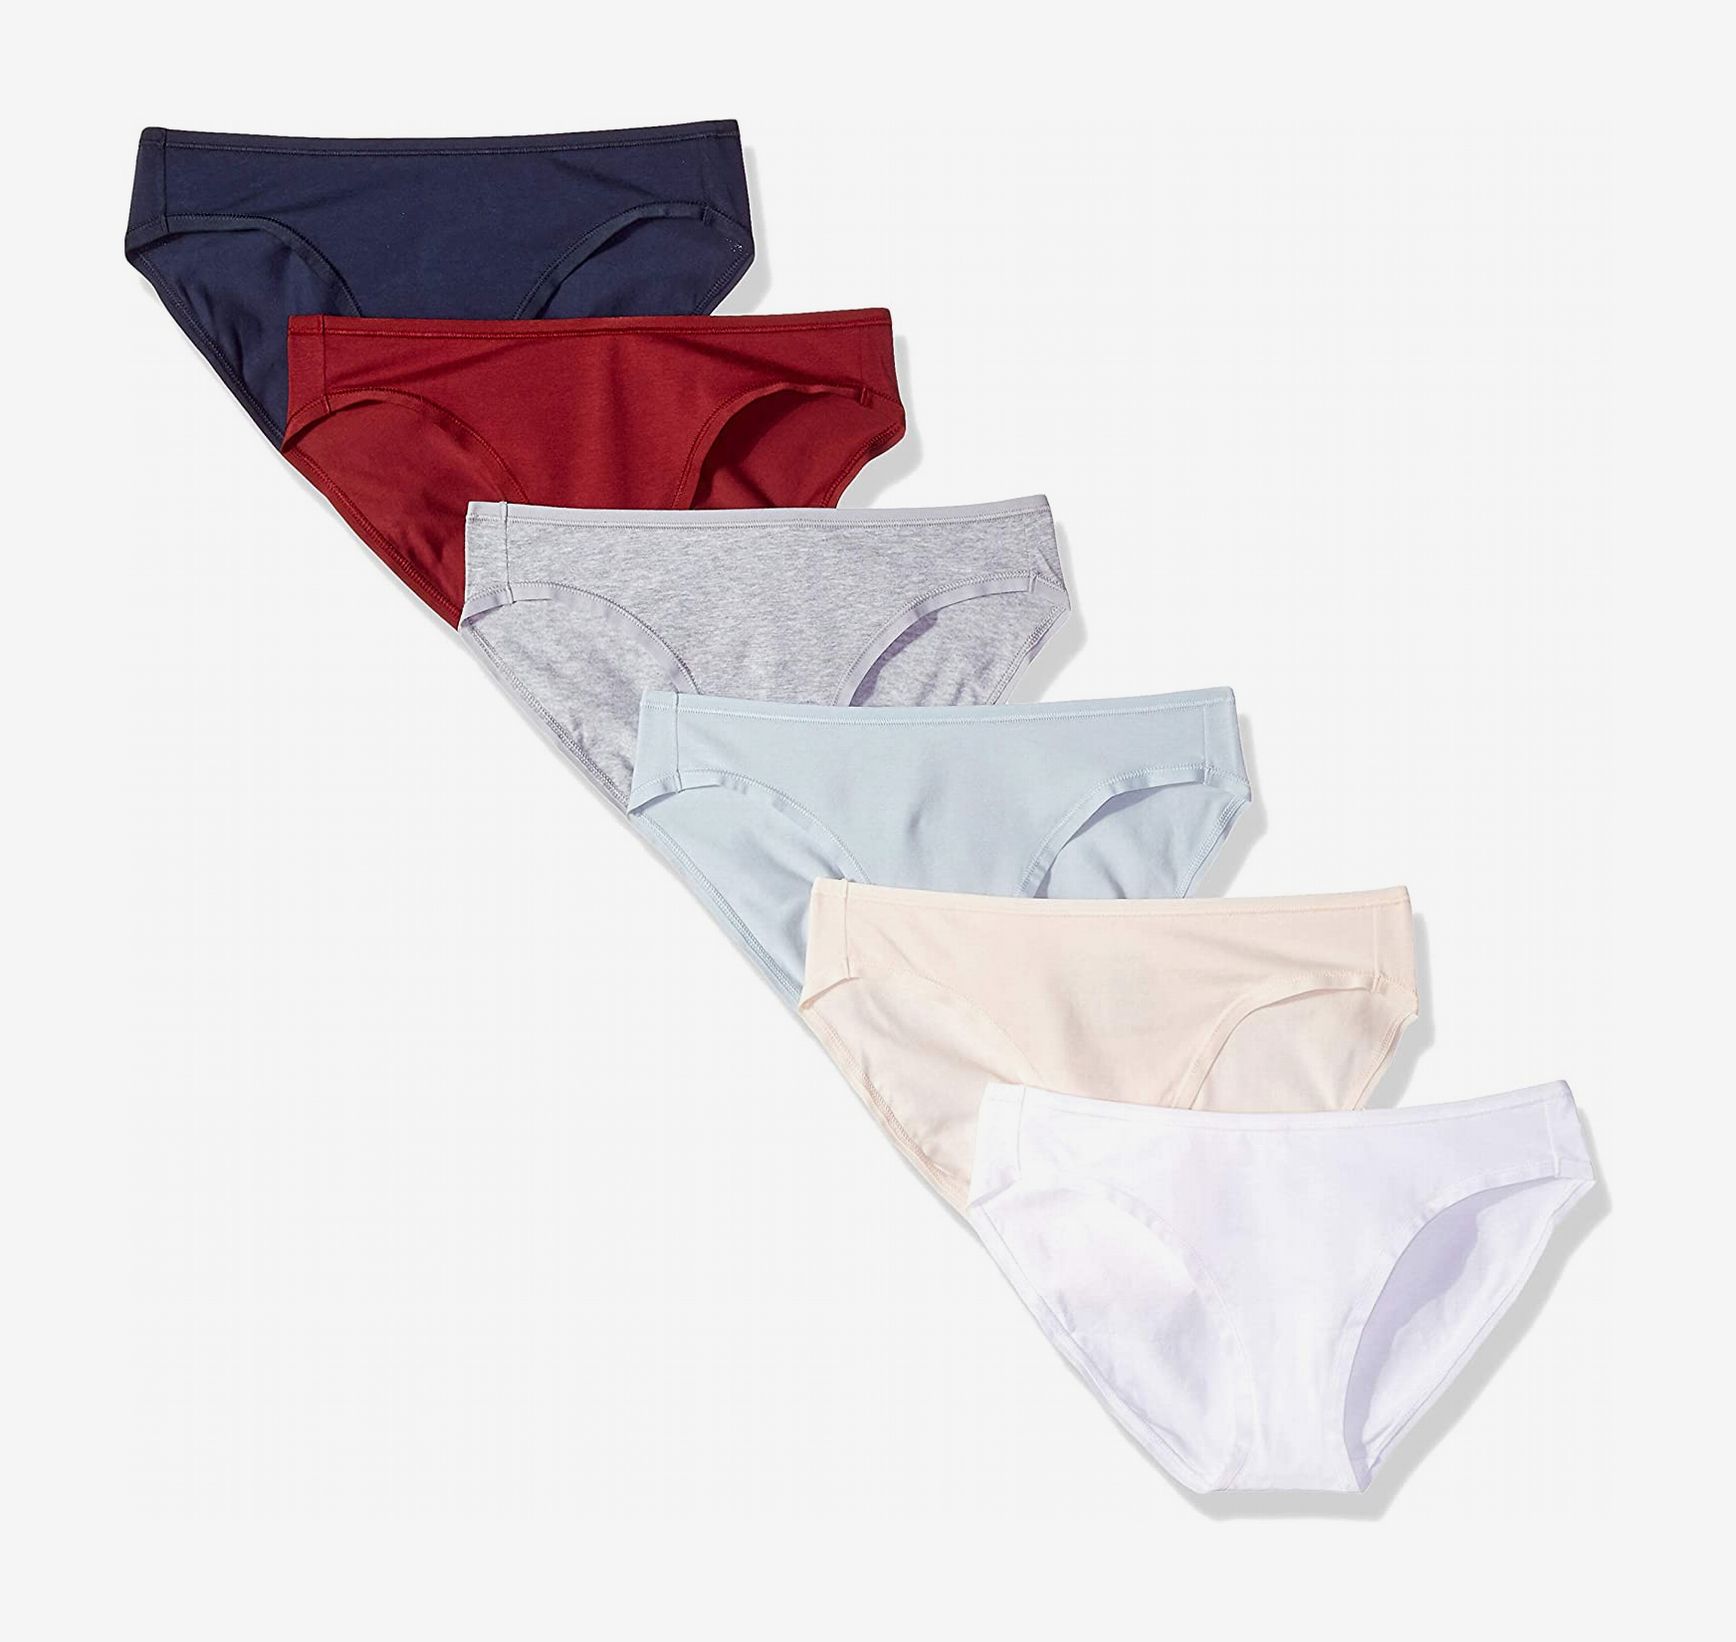 Premium 100% Cotton 1x 3x 6x 12x Ladies Women Girls Bikini Briefs Soft Underwear